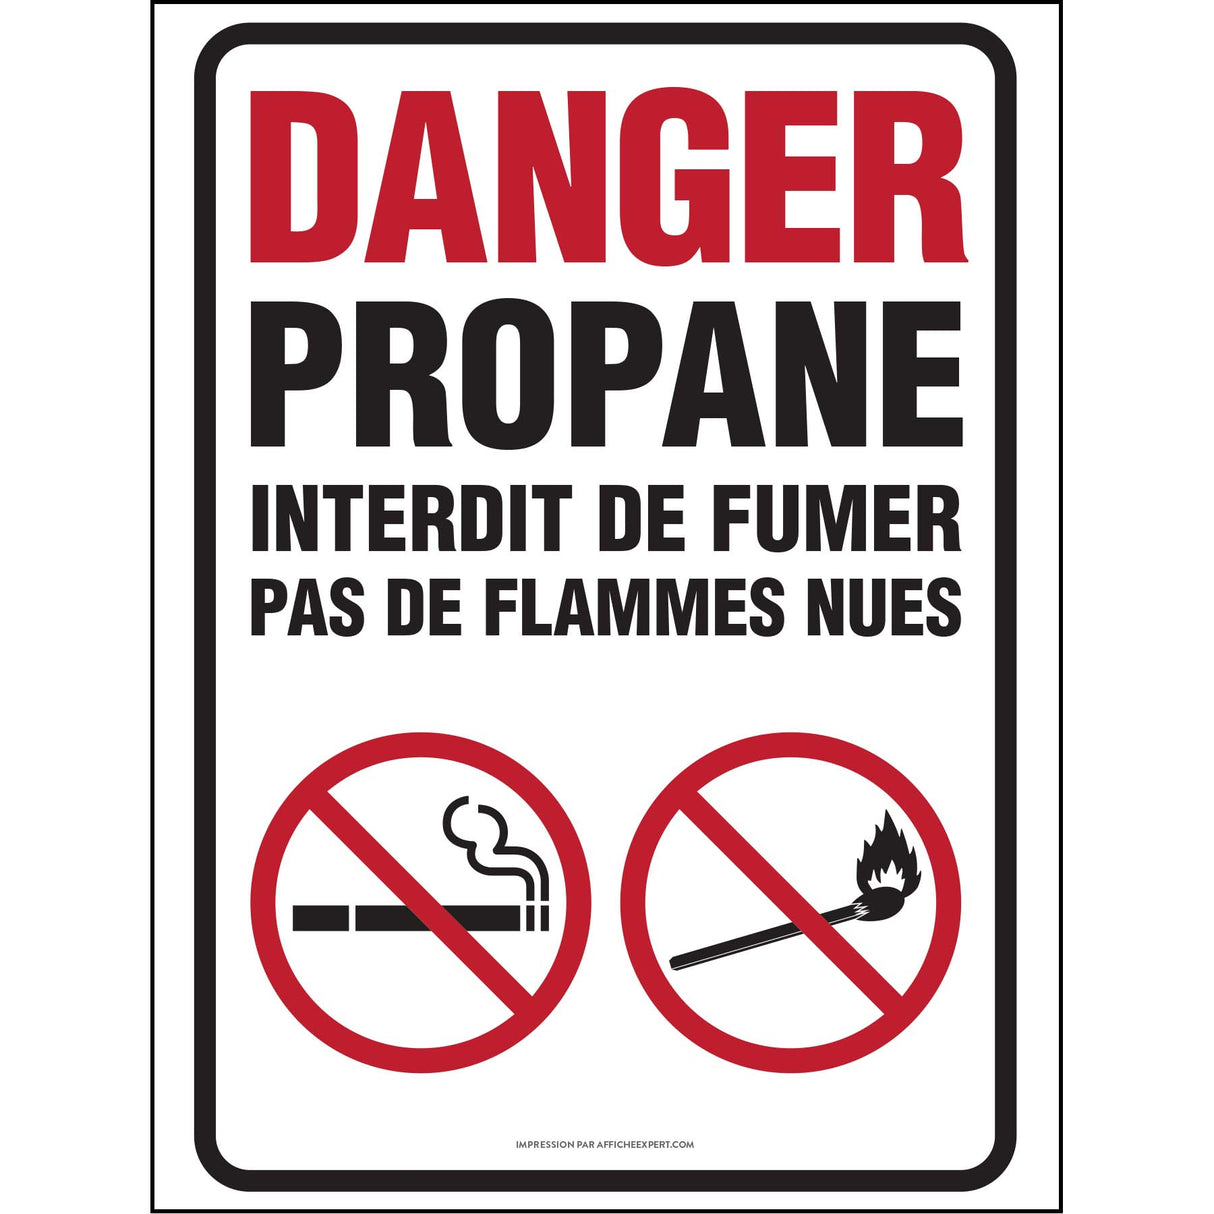 Danger propane - Interdiction de fumer / pas de flammes nues